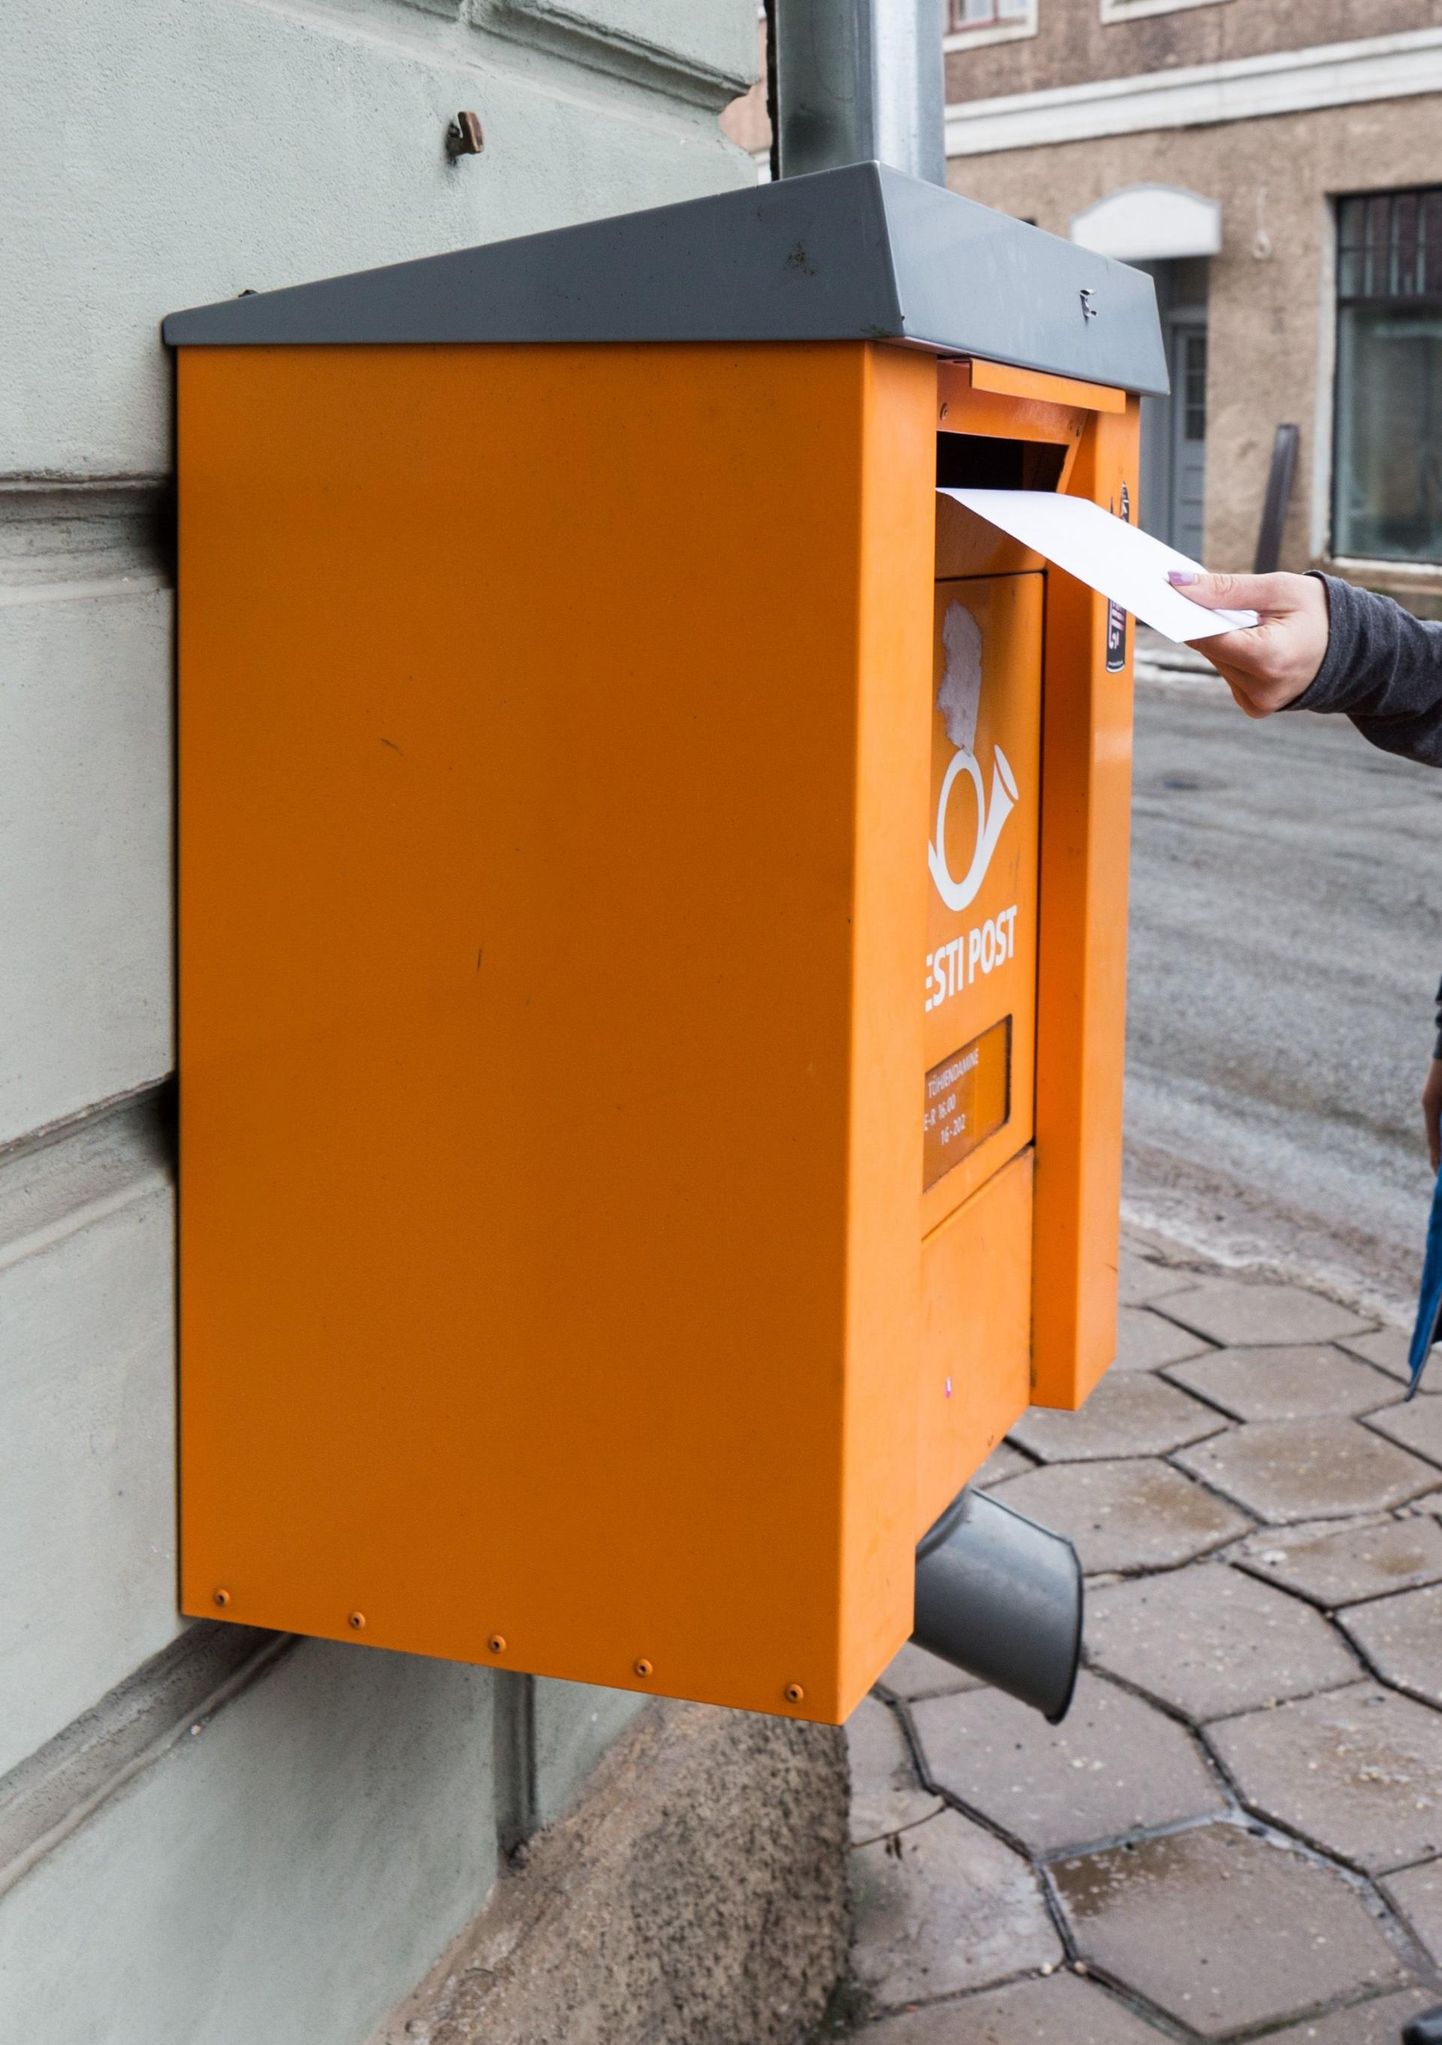 Eestis saadetakse inimese kohta üks kiri aastas.